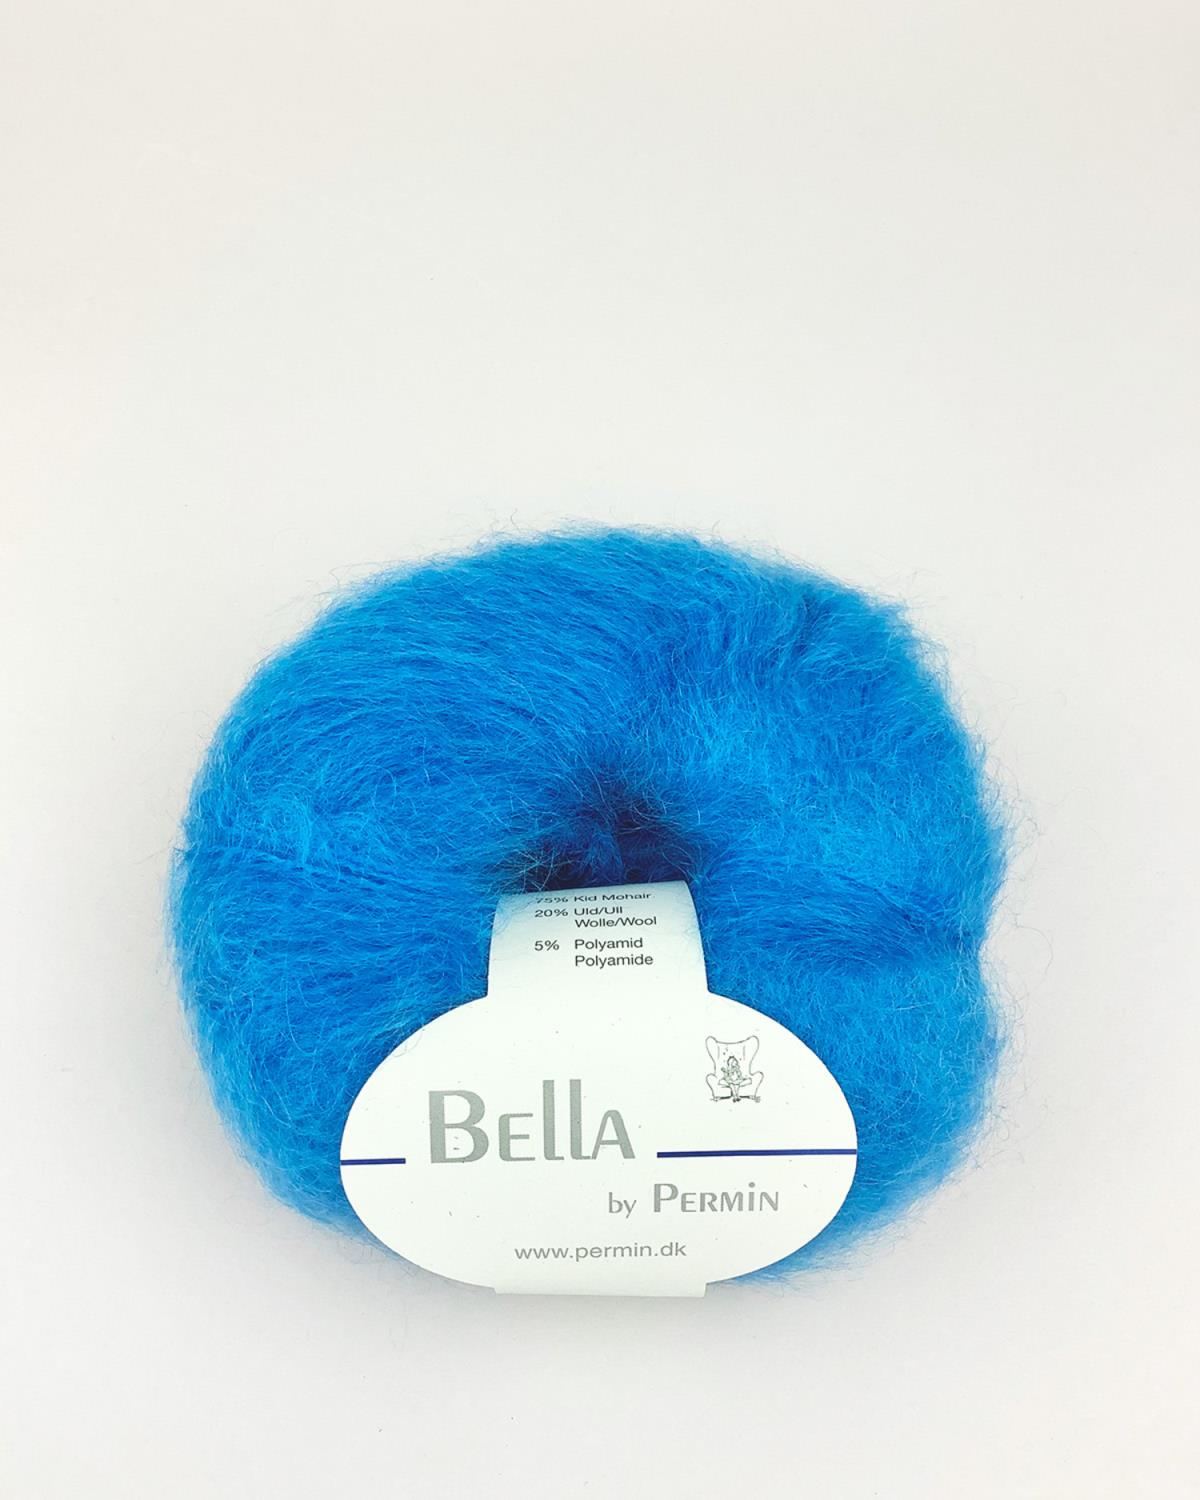 93 Bella - electric blue